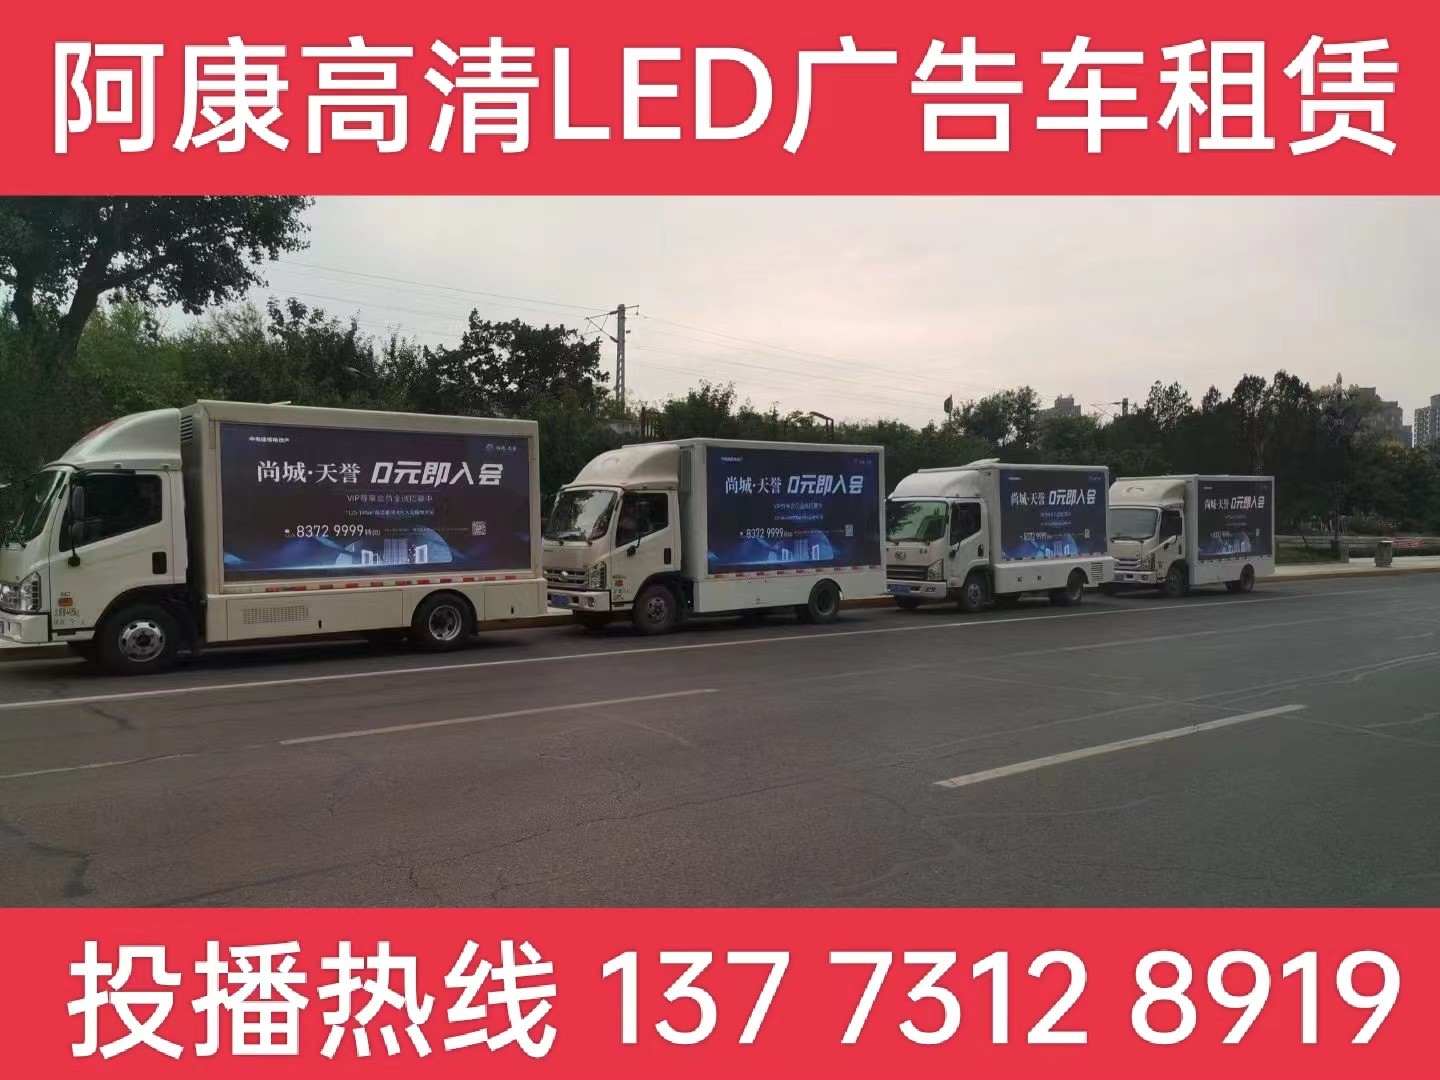 丹阳LED广告车出租公司